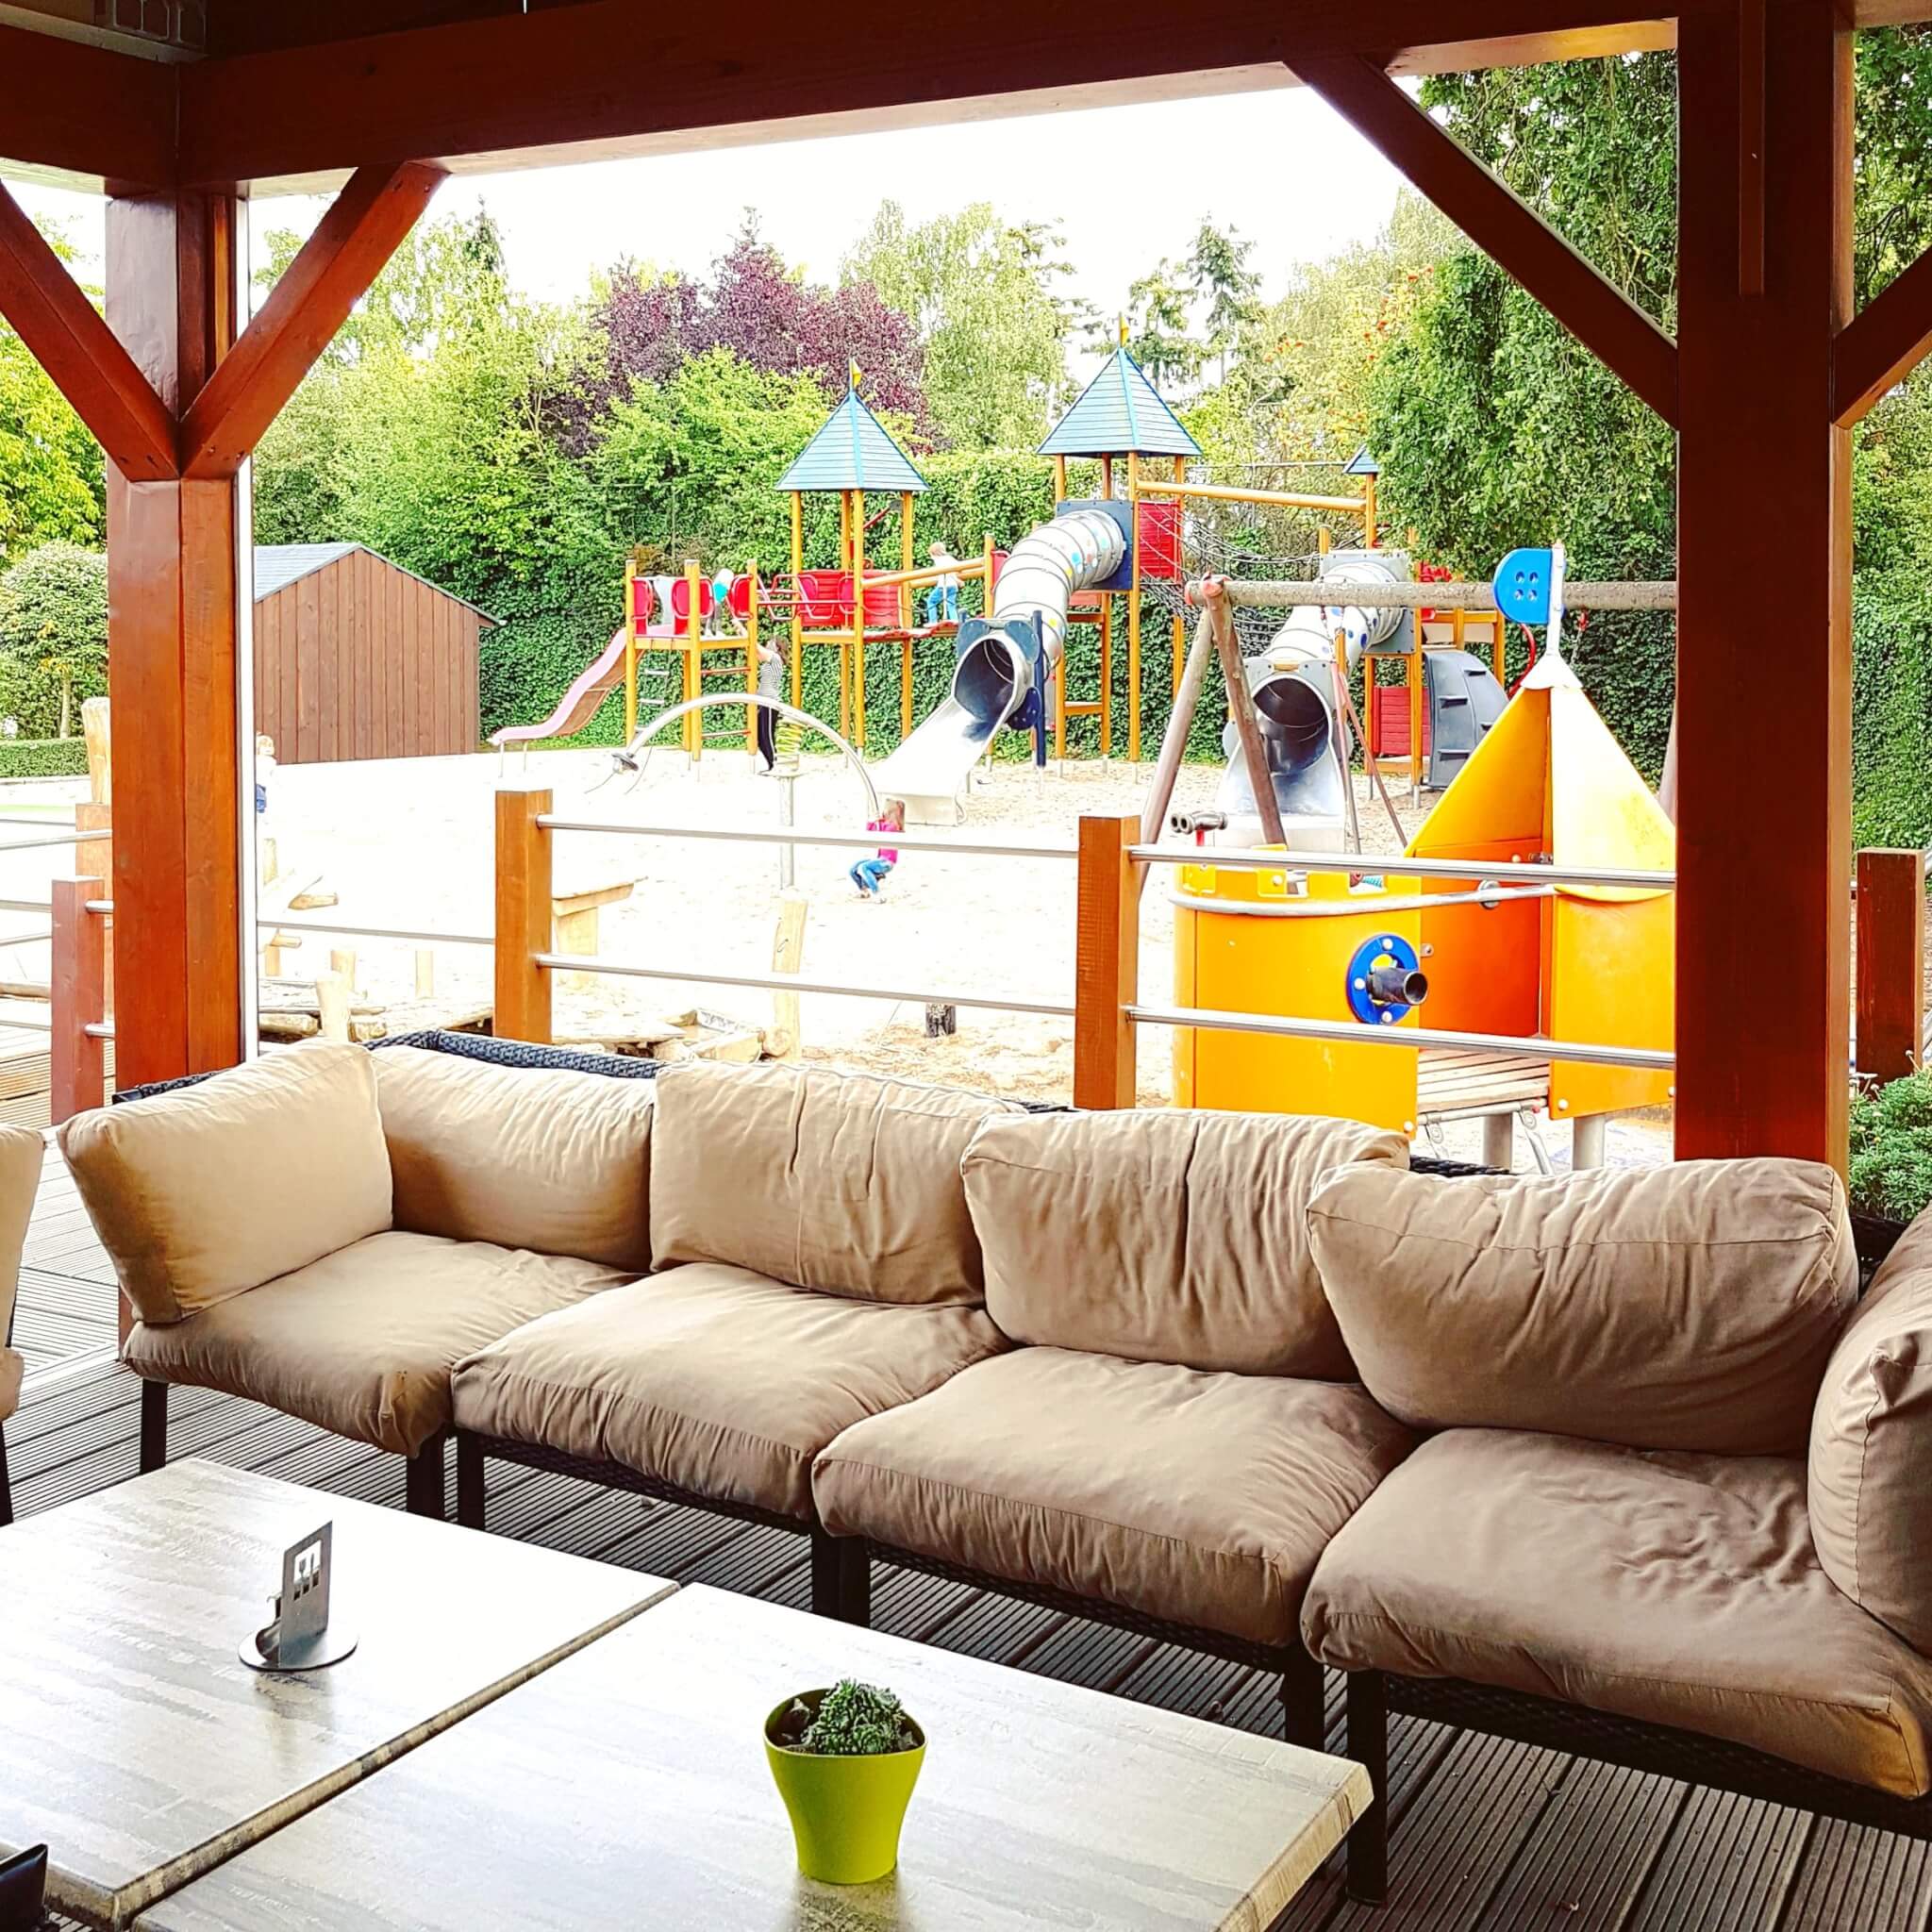 Landal Mont Royal: spelen, zwemmen en wijnproeven met een panoramisch uitzicht - terras restaurant Woods naast speeltuin